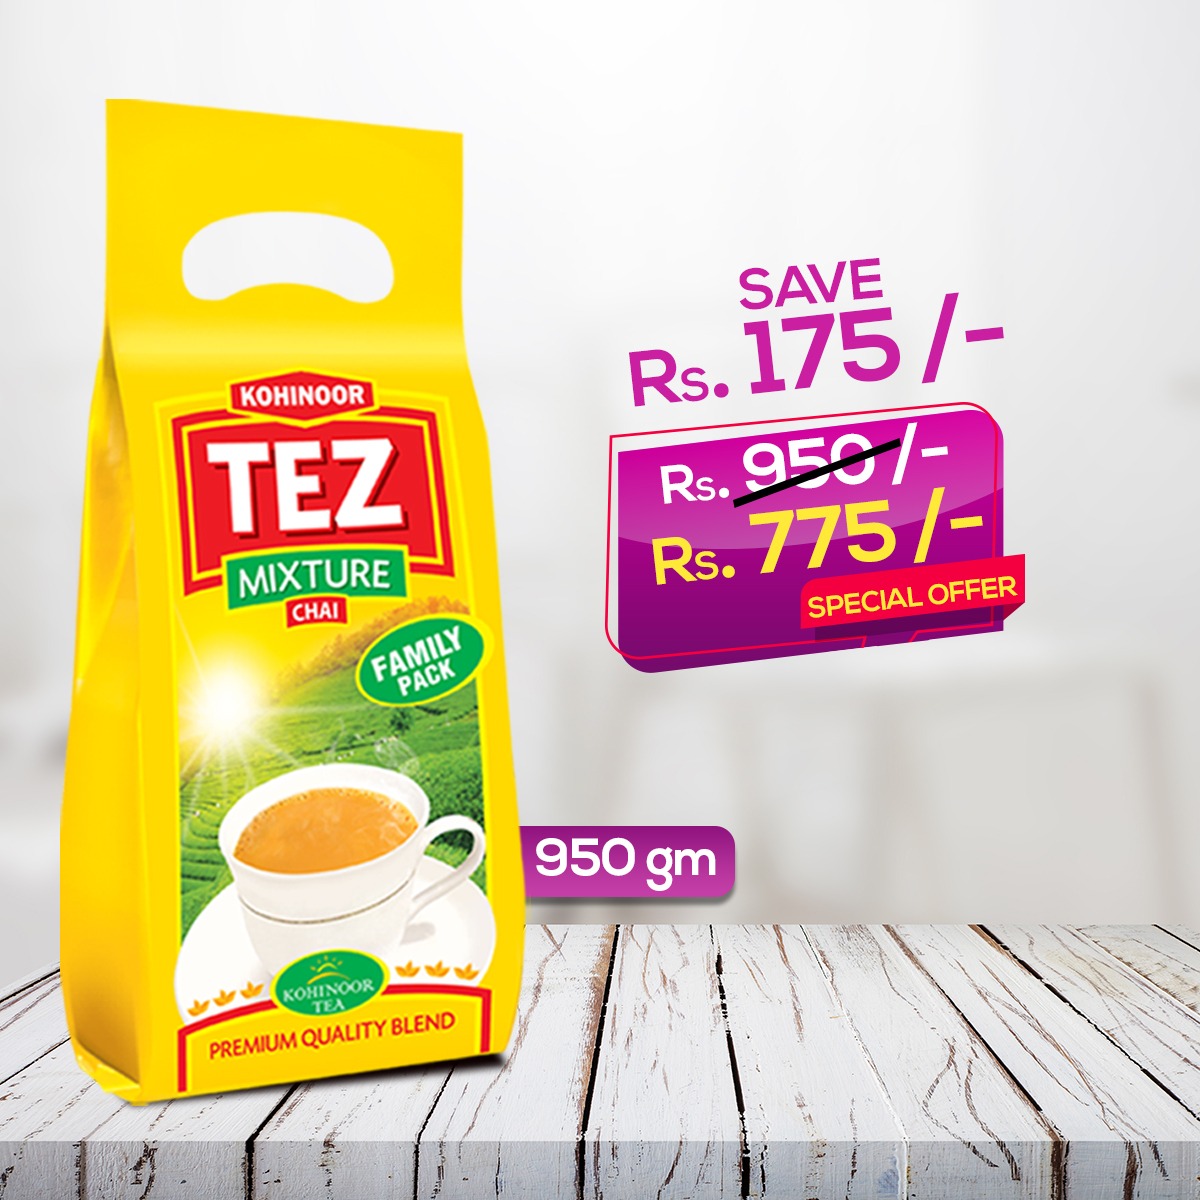 Tez Mixture Tea 950 Gm - Save Rs. 175